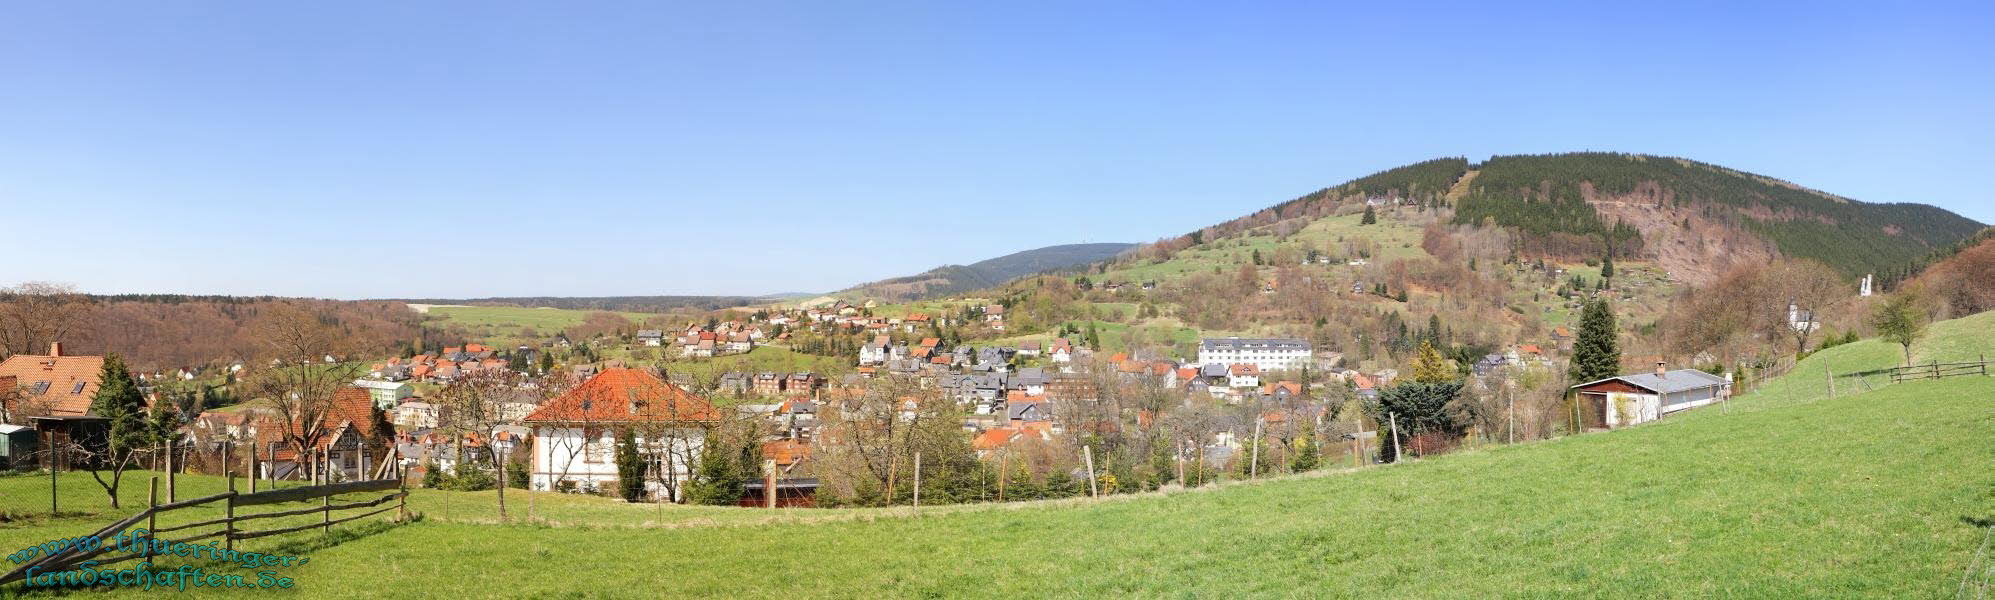 Blick von Meschenbach auf Rauenstein